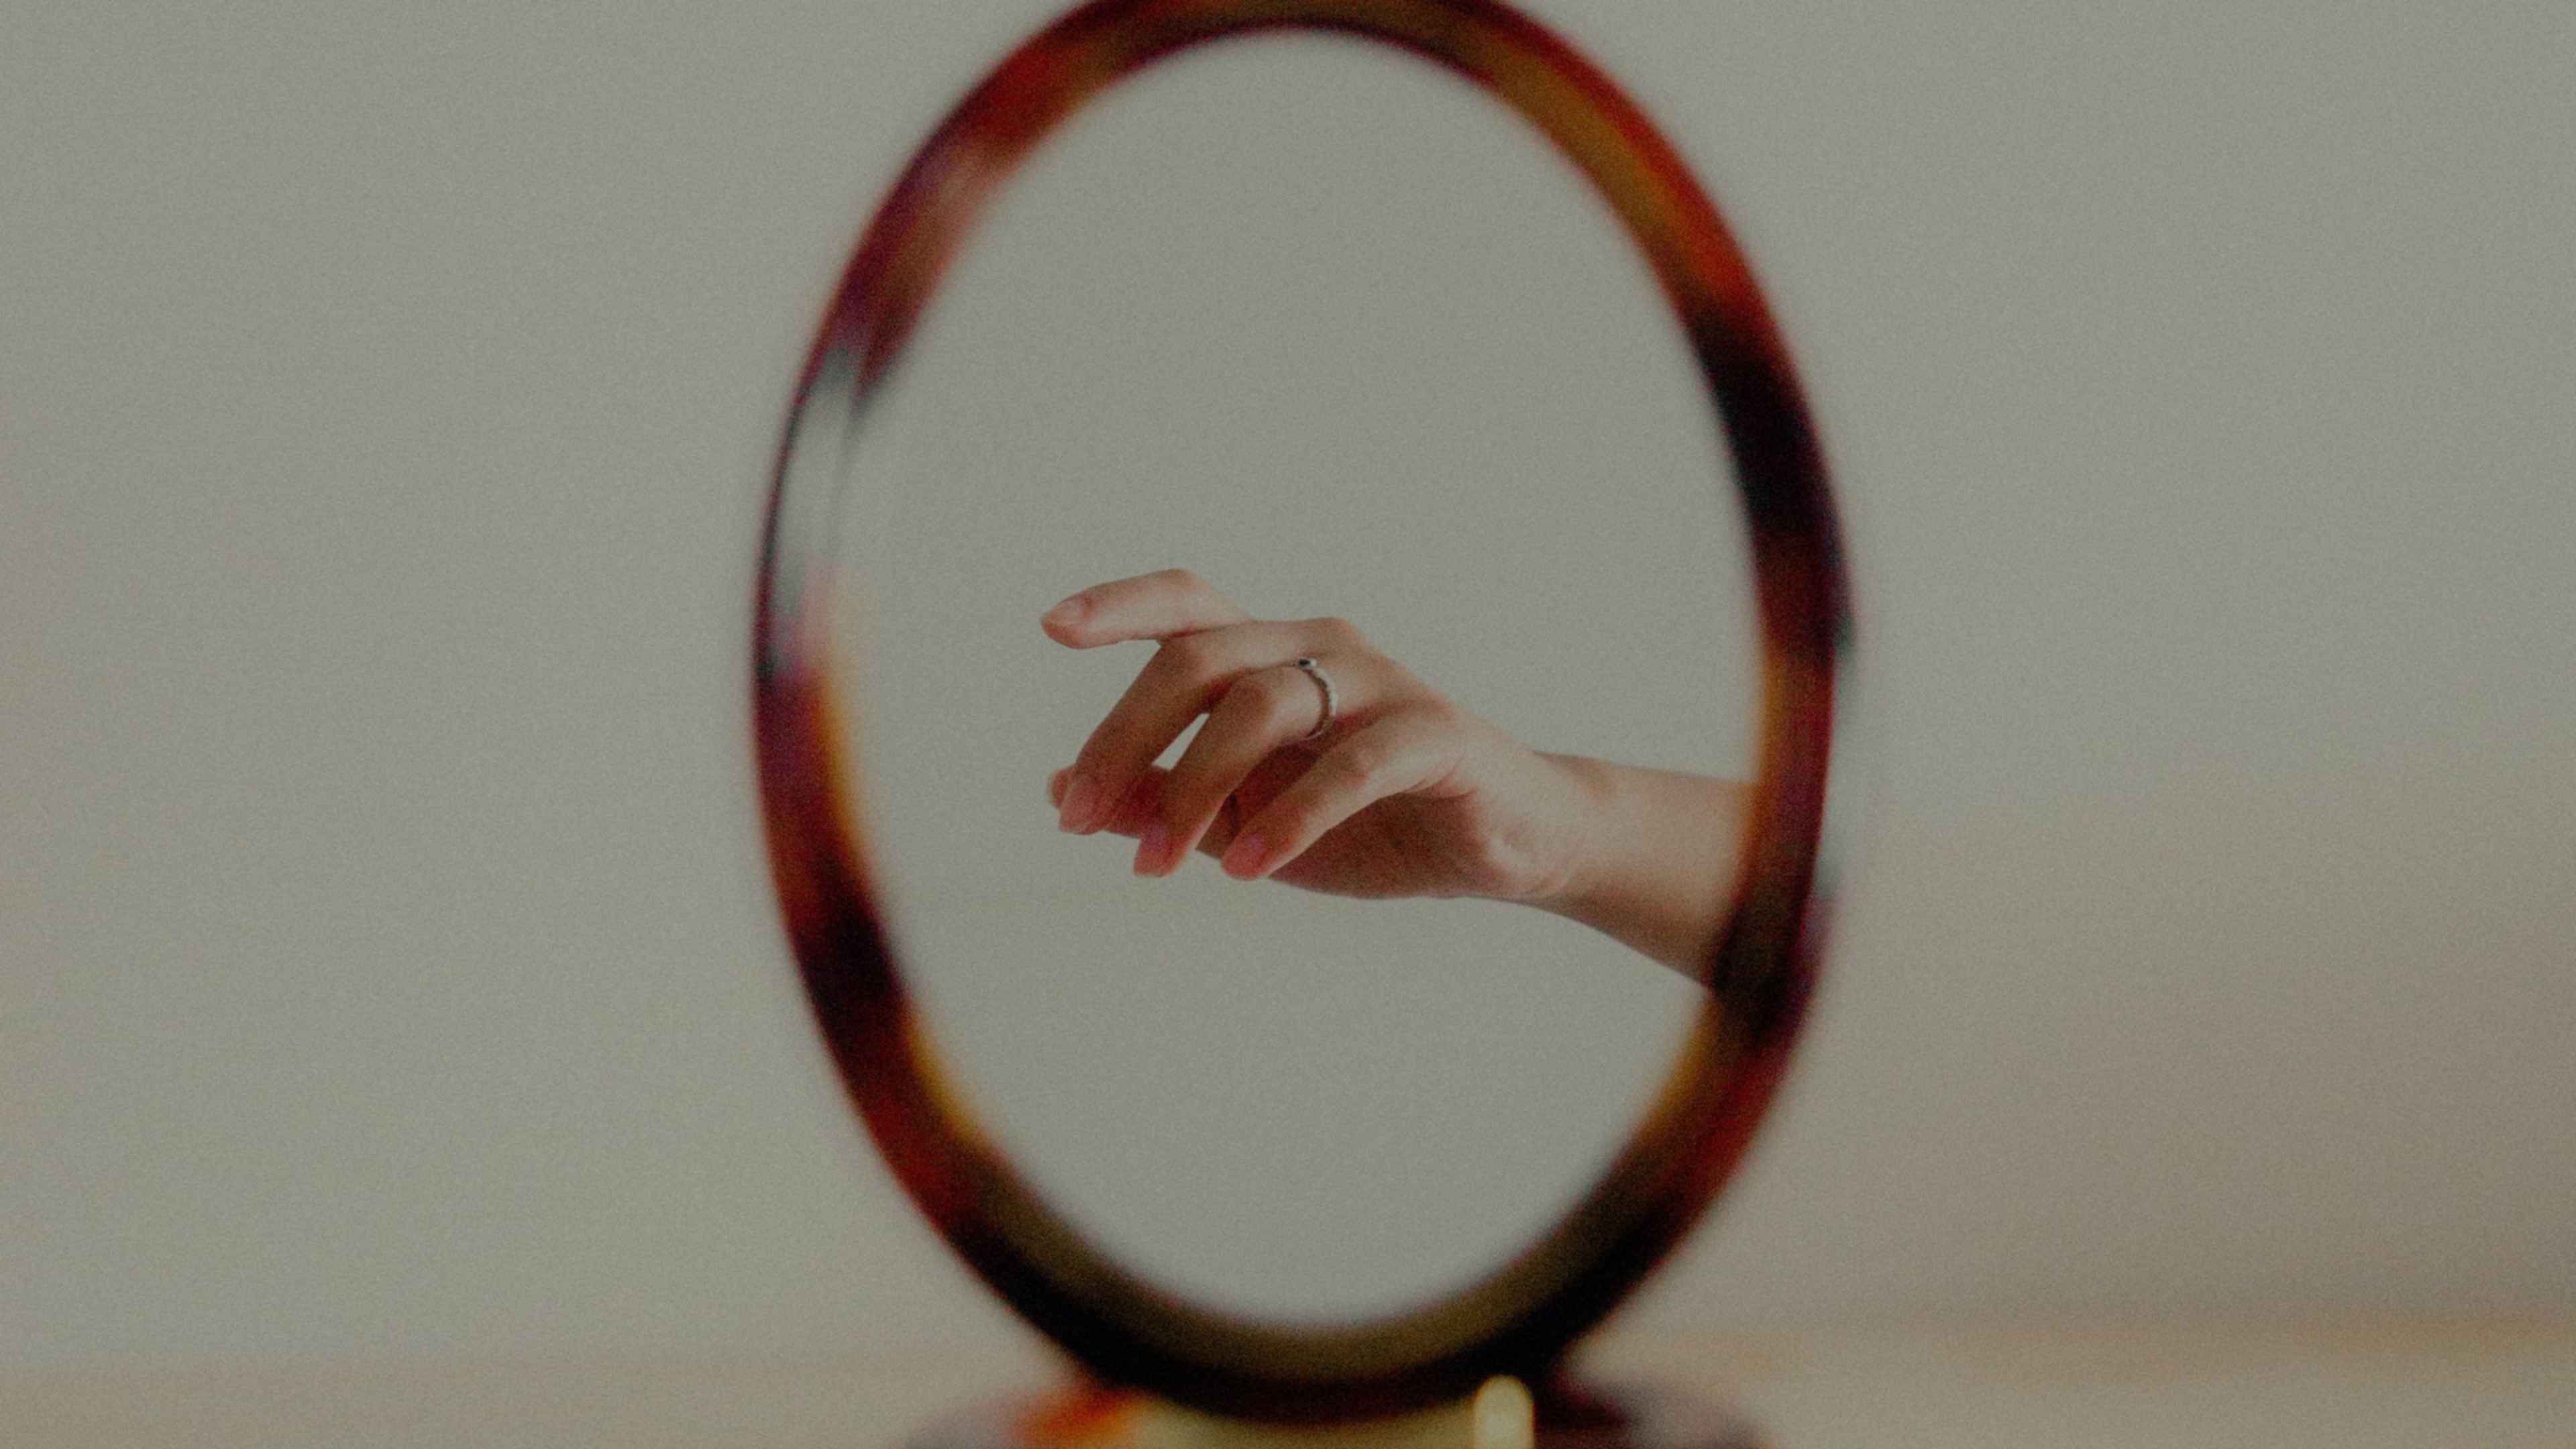 Заметьте в свои руки. Отражение в зеркале. Зеркало в руке. Отражение руки в зеркале. Рука отражается в зеркале.